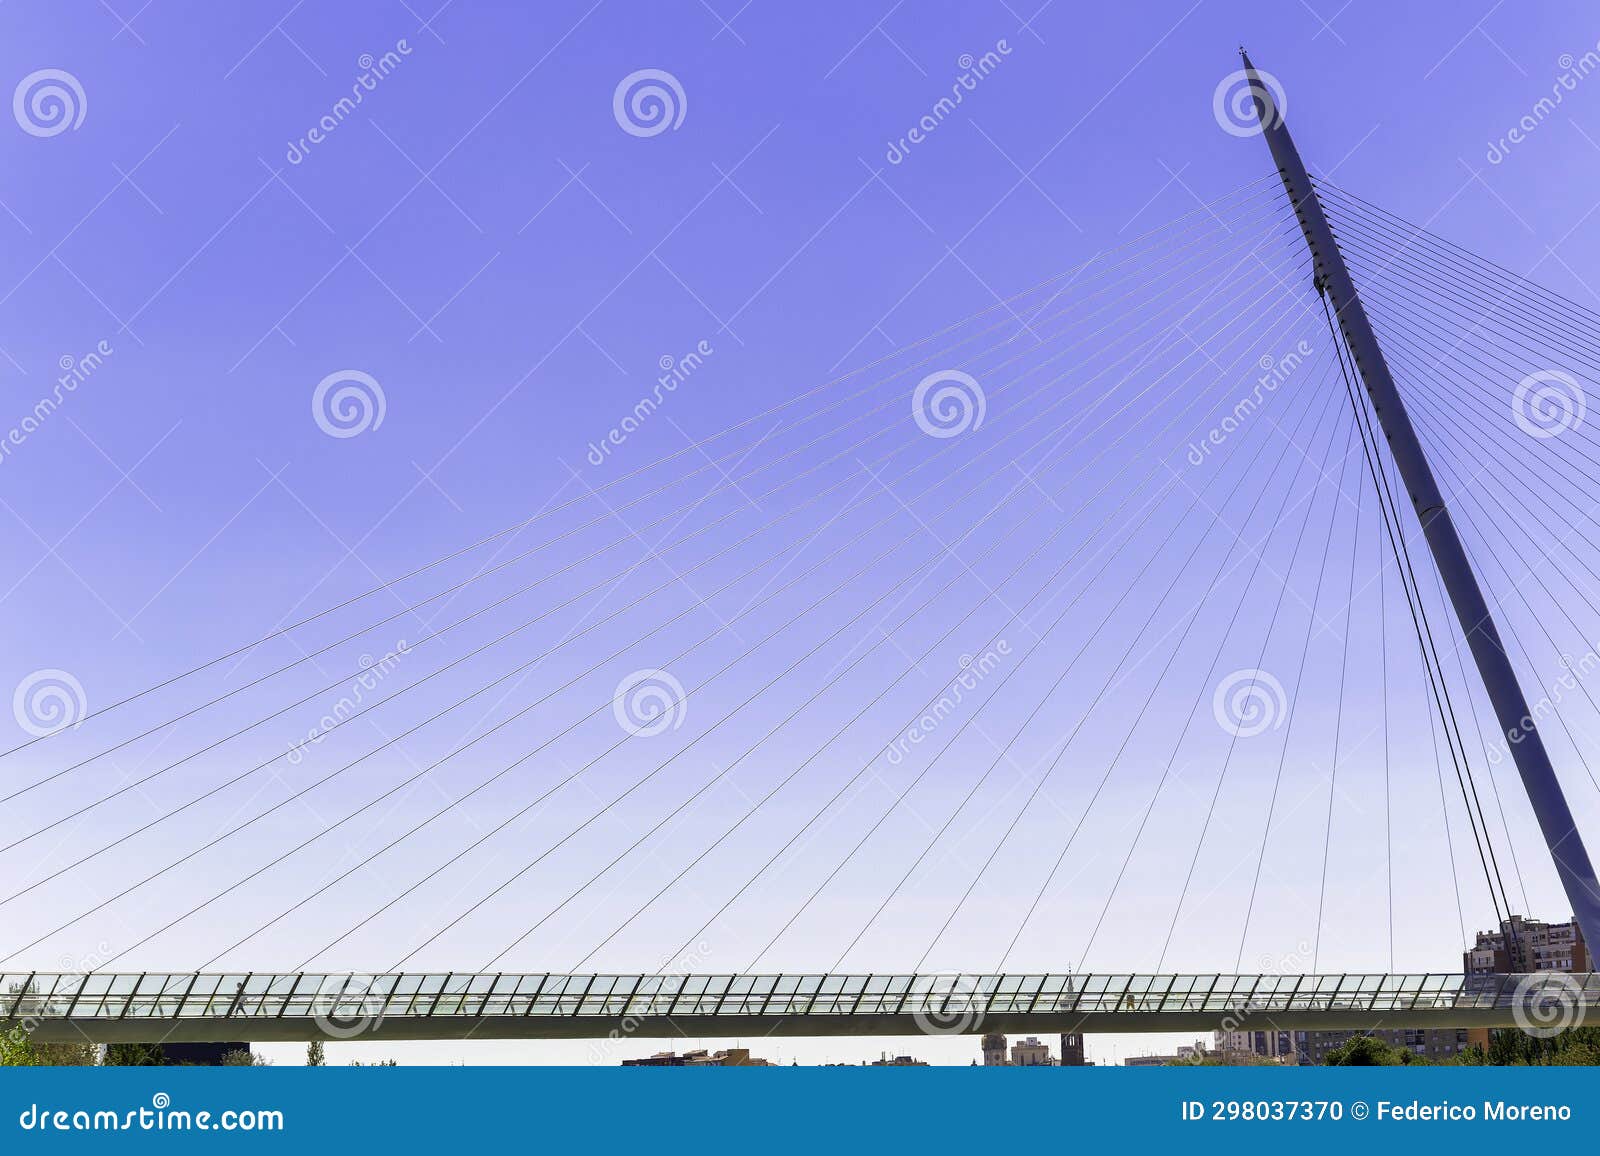 pasarela del voluntariado. side view. modern bridge over a blue sky in zaragoza